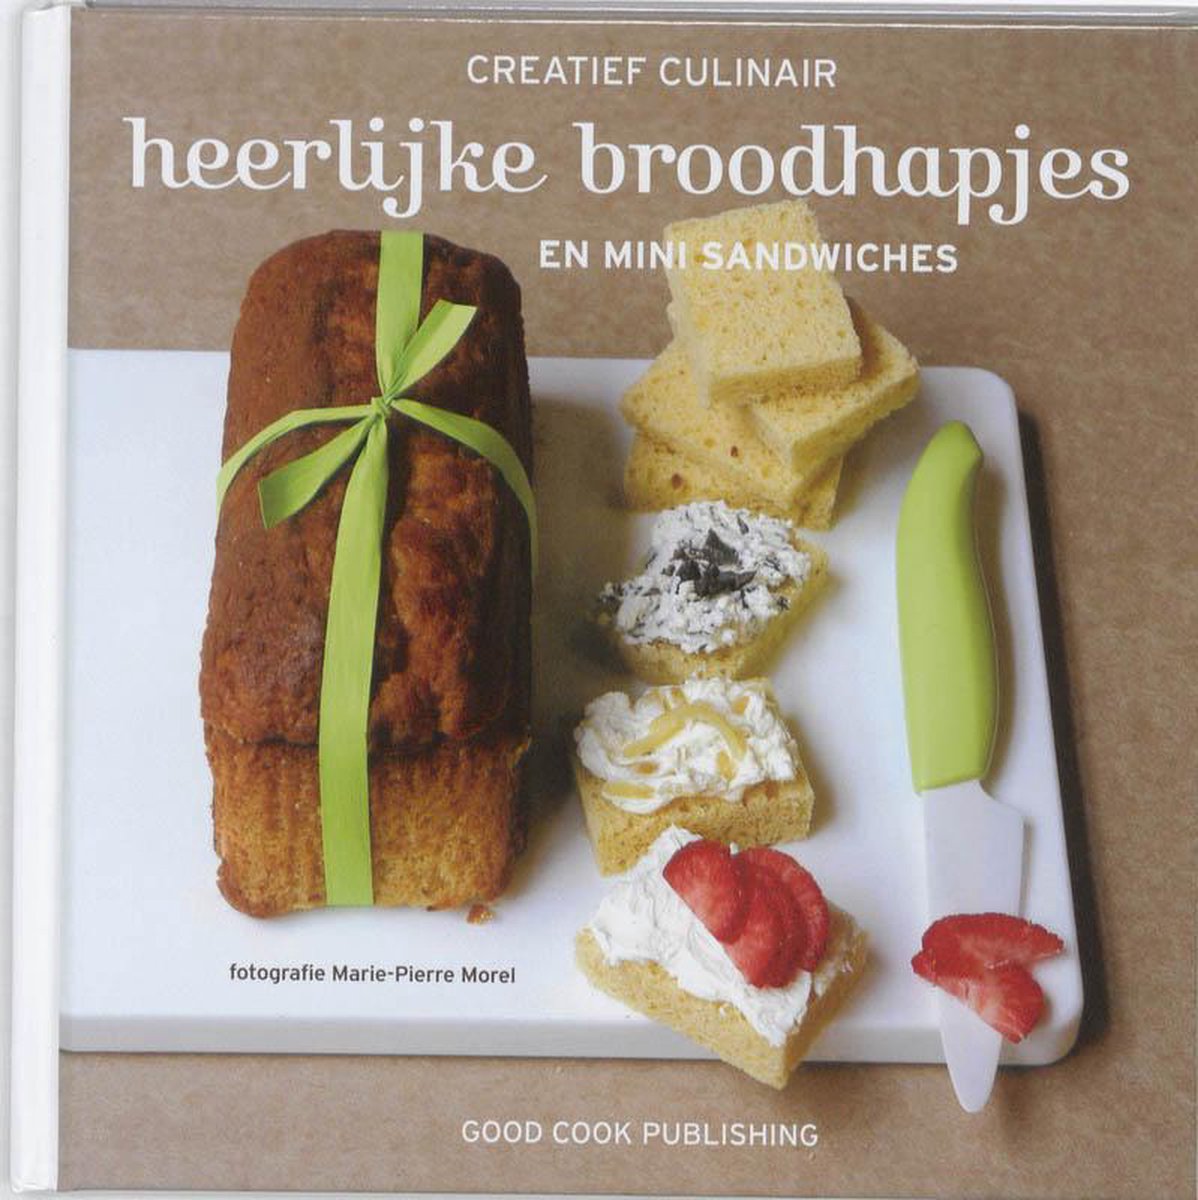 Heerlijke broodhapjes en mini sandwiches / Creatief Culinair